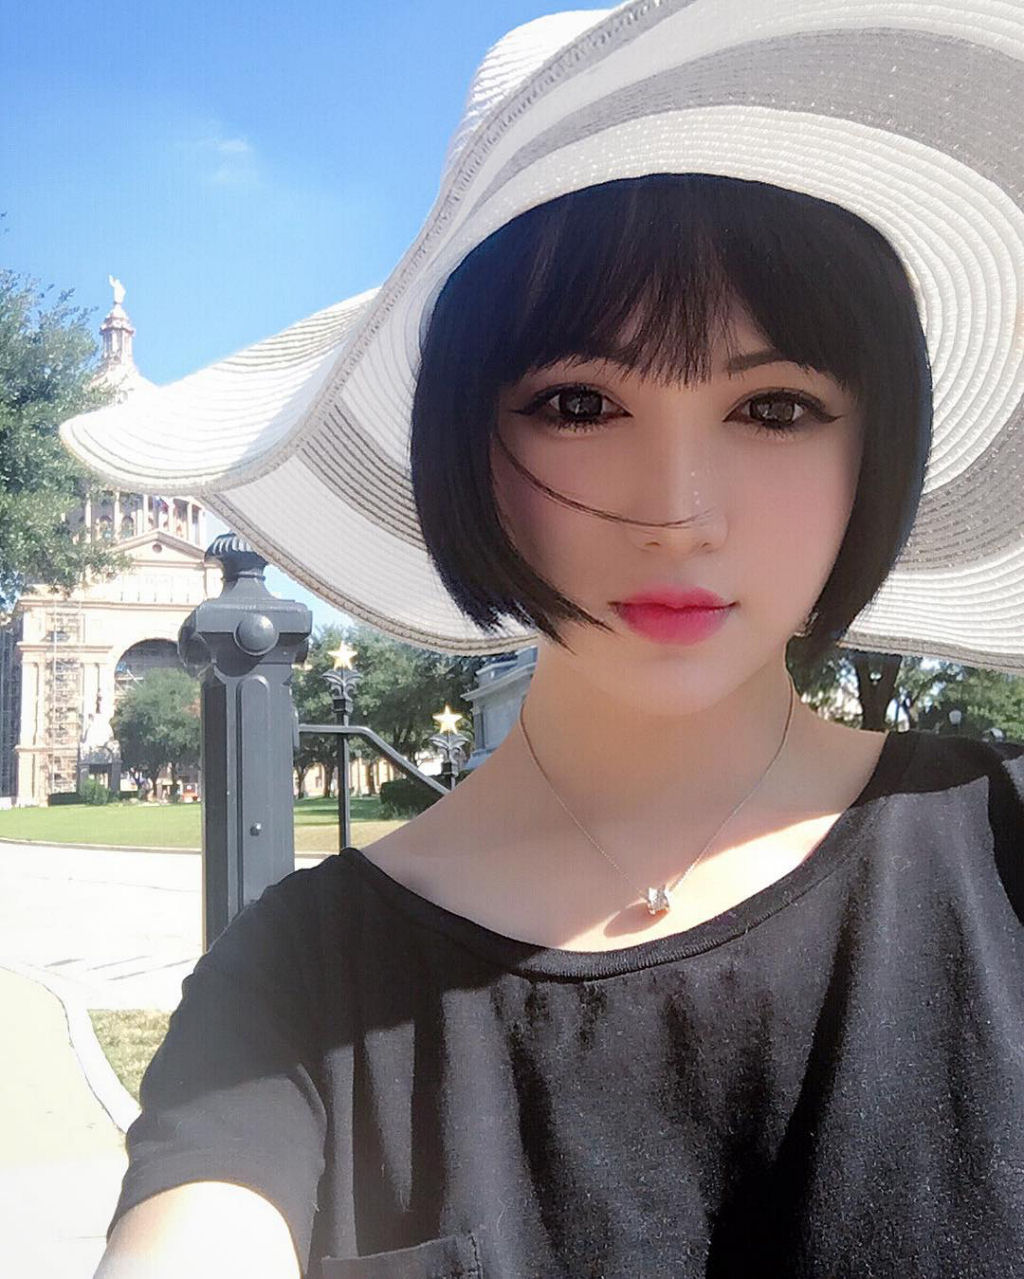 Conheça Kina Shen, a boneca de porcelana chinesa que respira 18